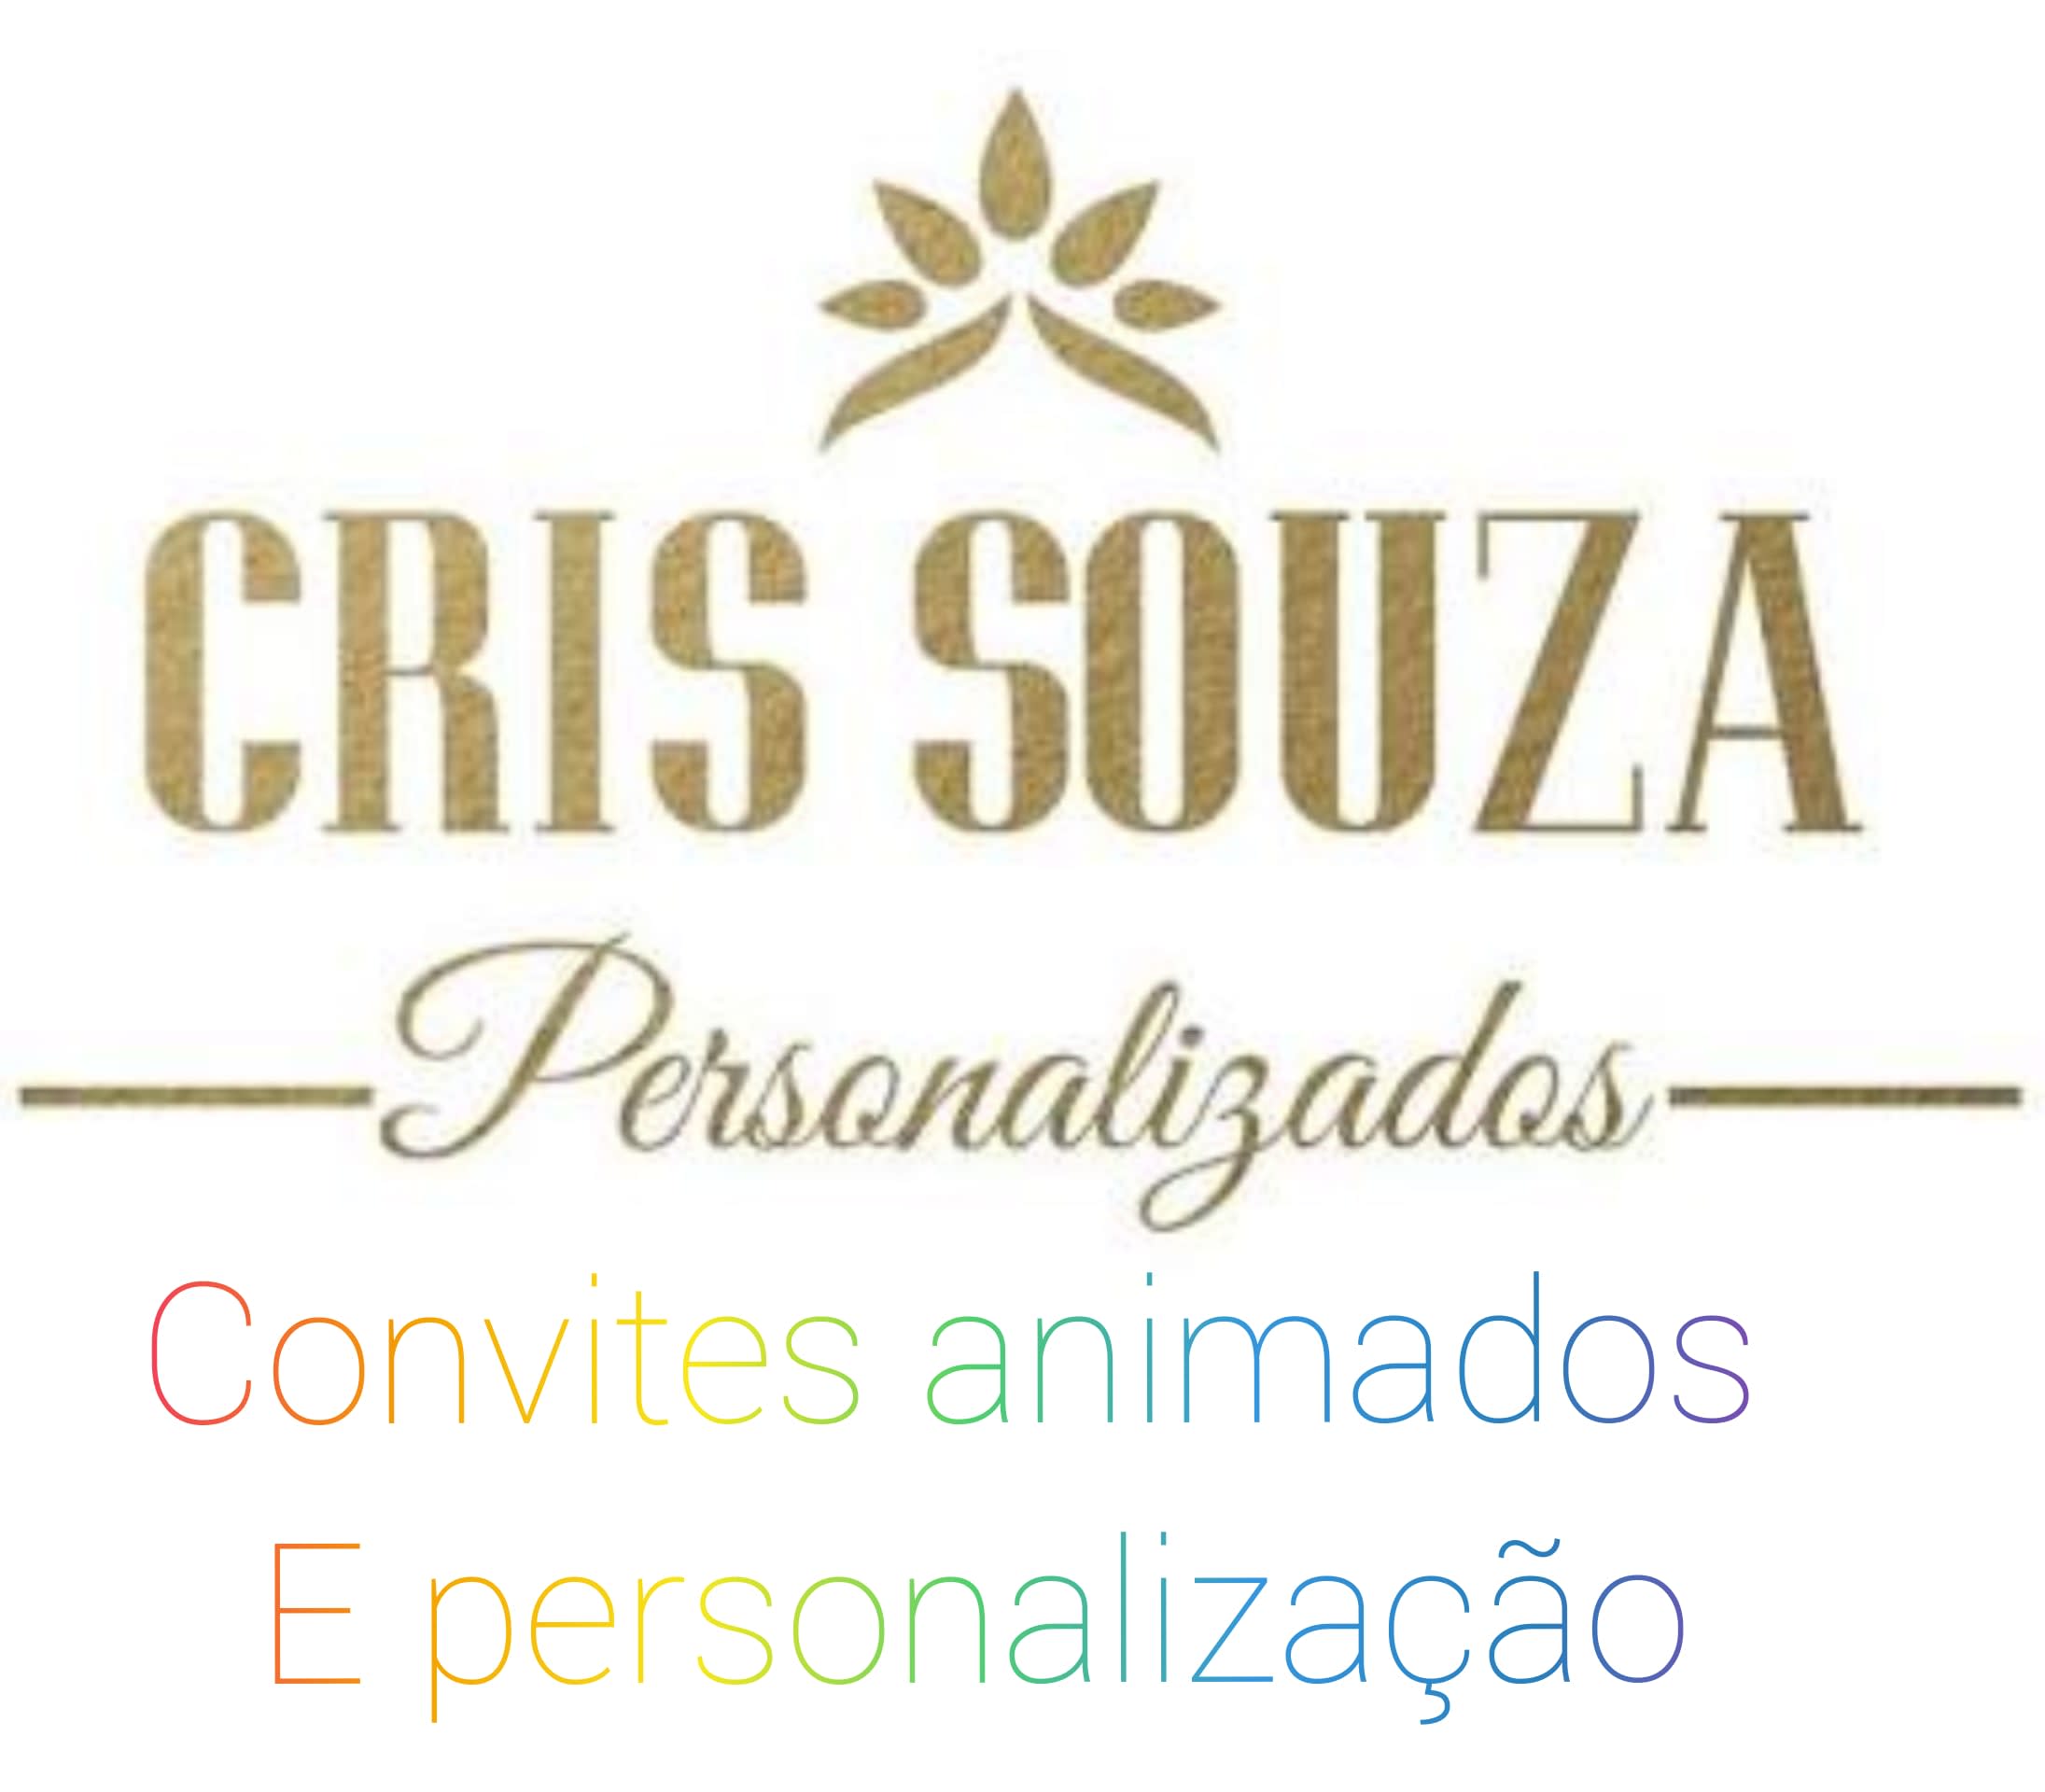 Cris Souza Personalizados